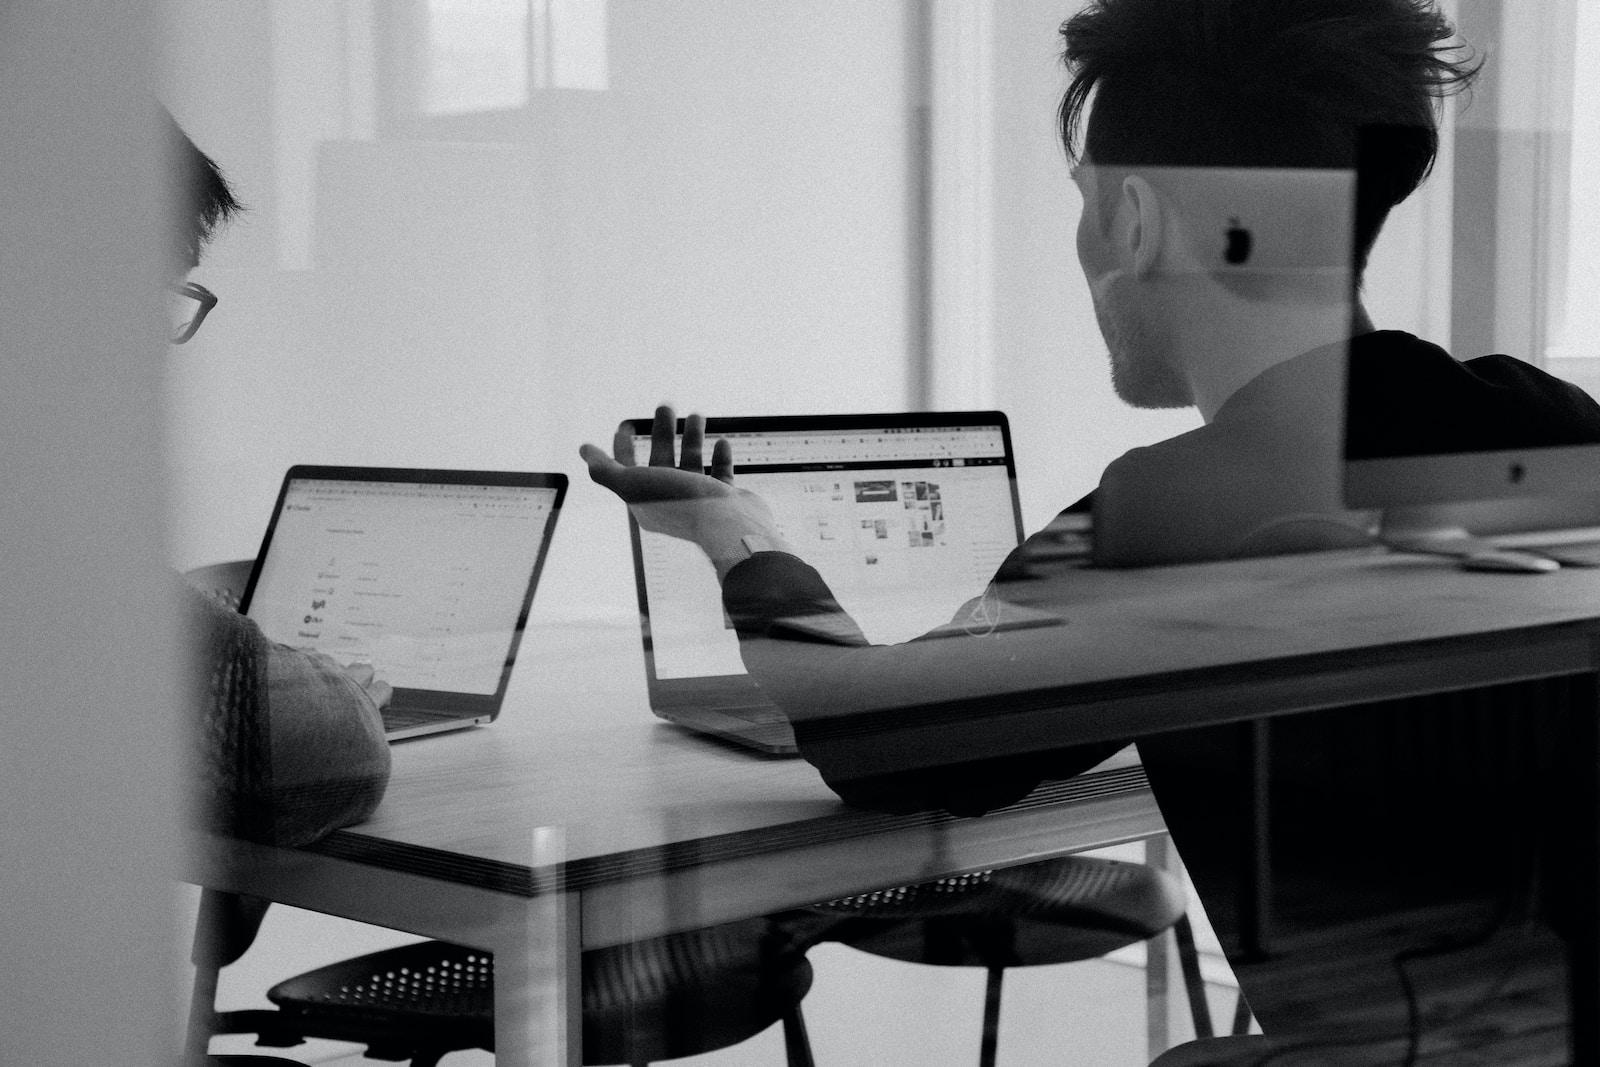 Schwarz-Weiß-Aufnahme von 2 Personen, die jeweils vor einem Laptop sitzen